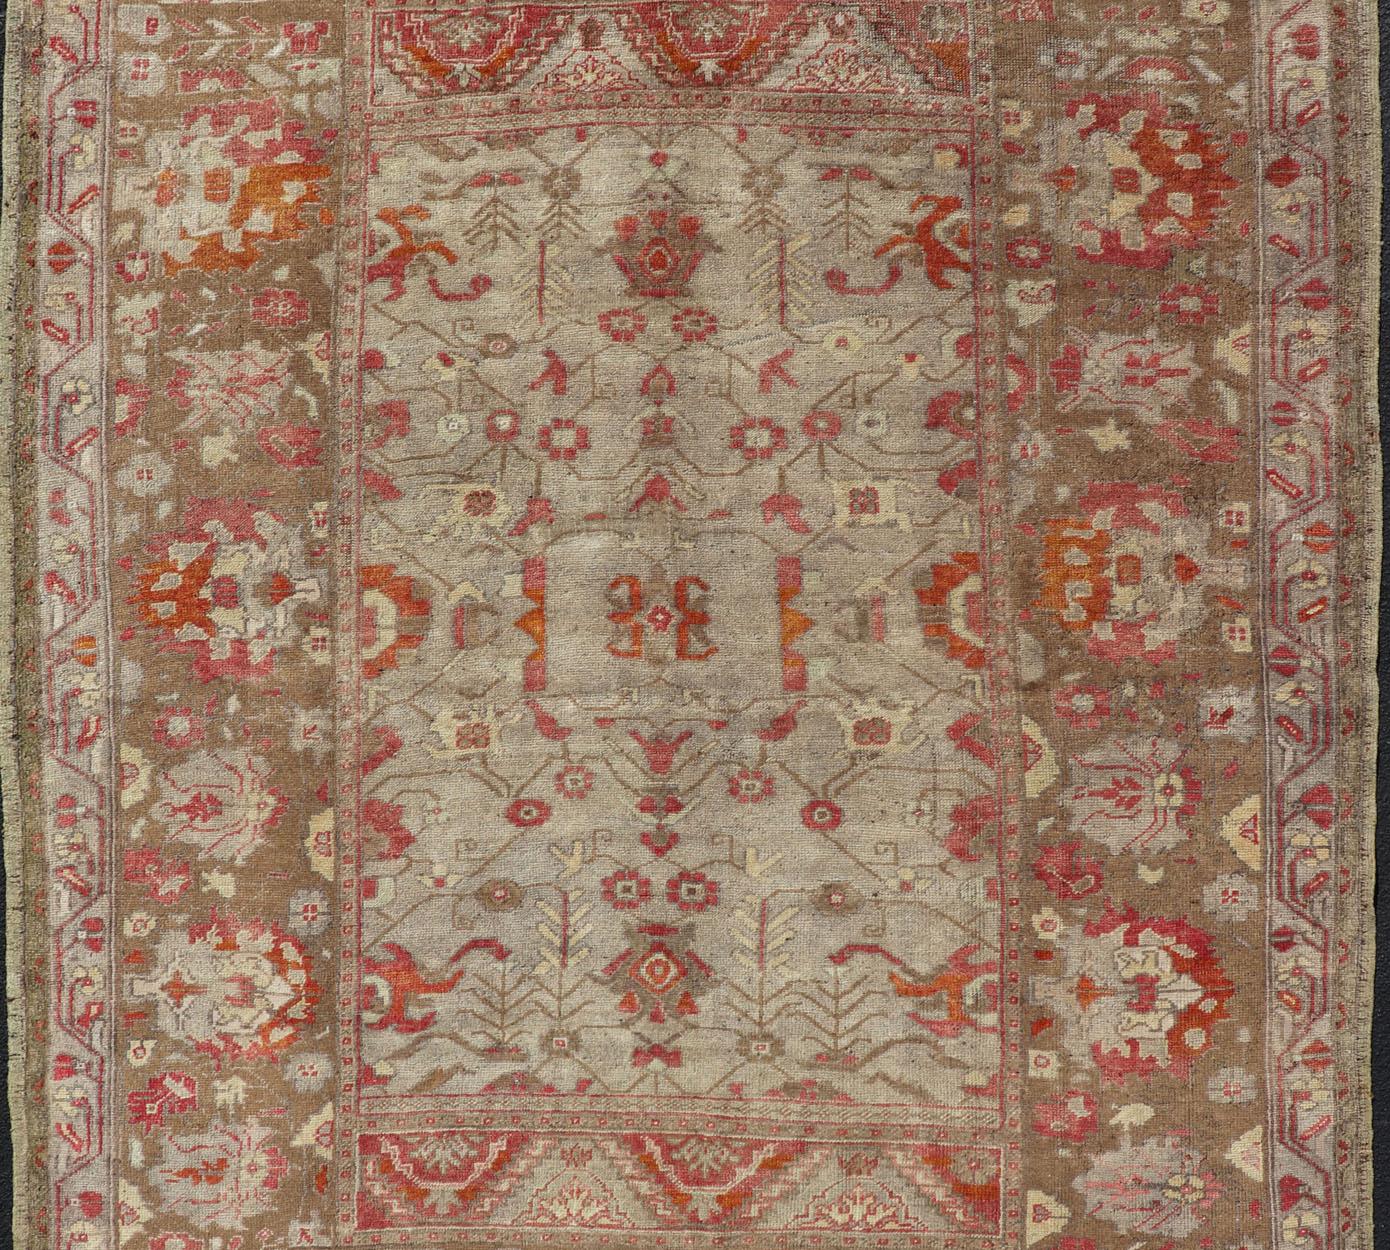 Quadratischer antiker türkischer Oushak-Teppich mit Blumenmuster in Grün, Rot, Taupe und Hellbraun (Türkisch)